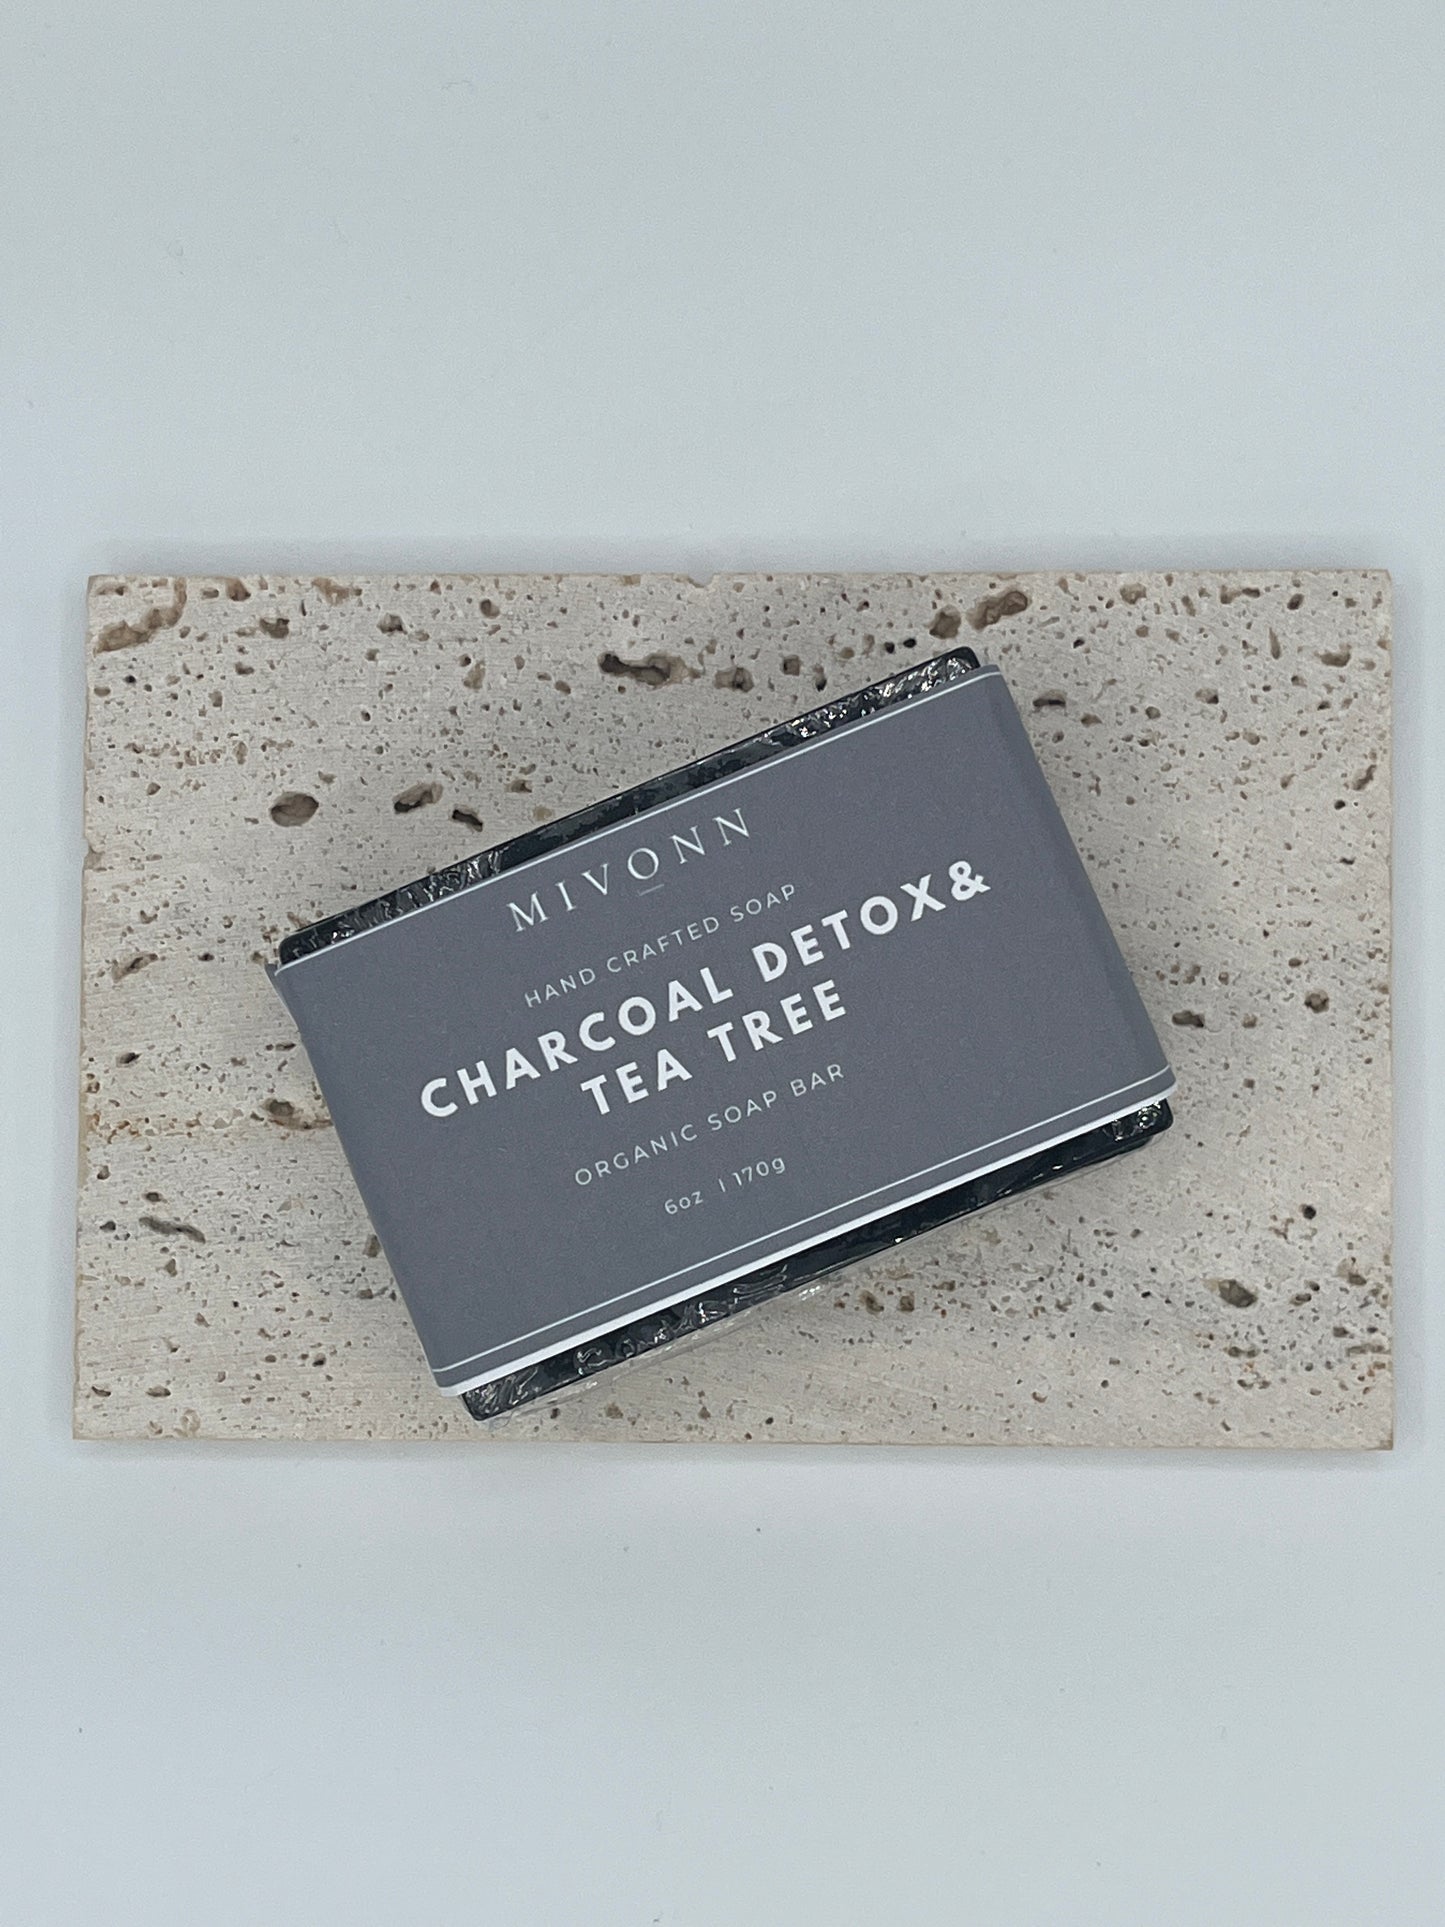 Charcoal detox & tea tree bar soap